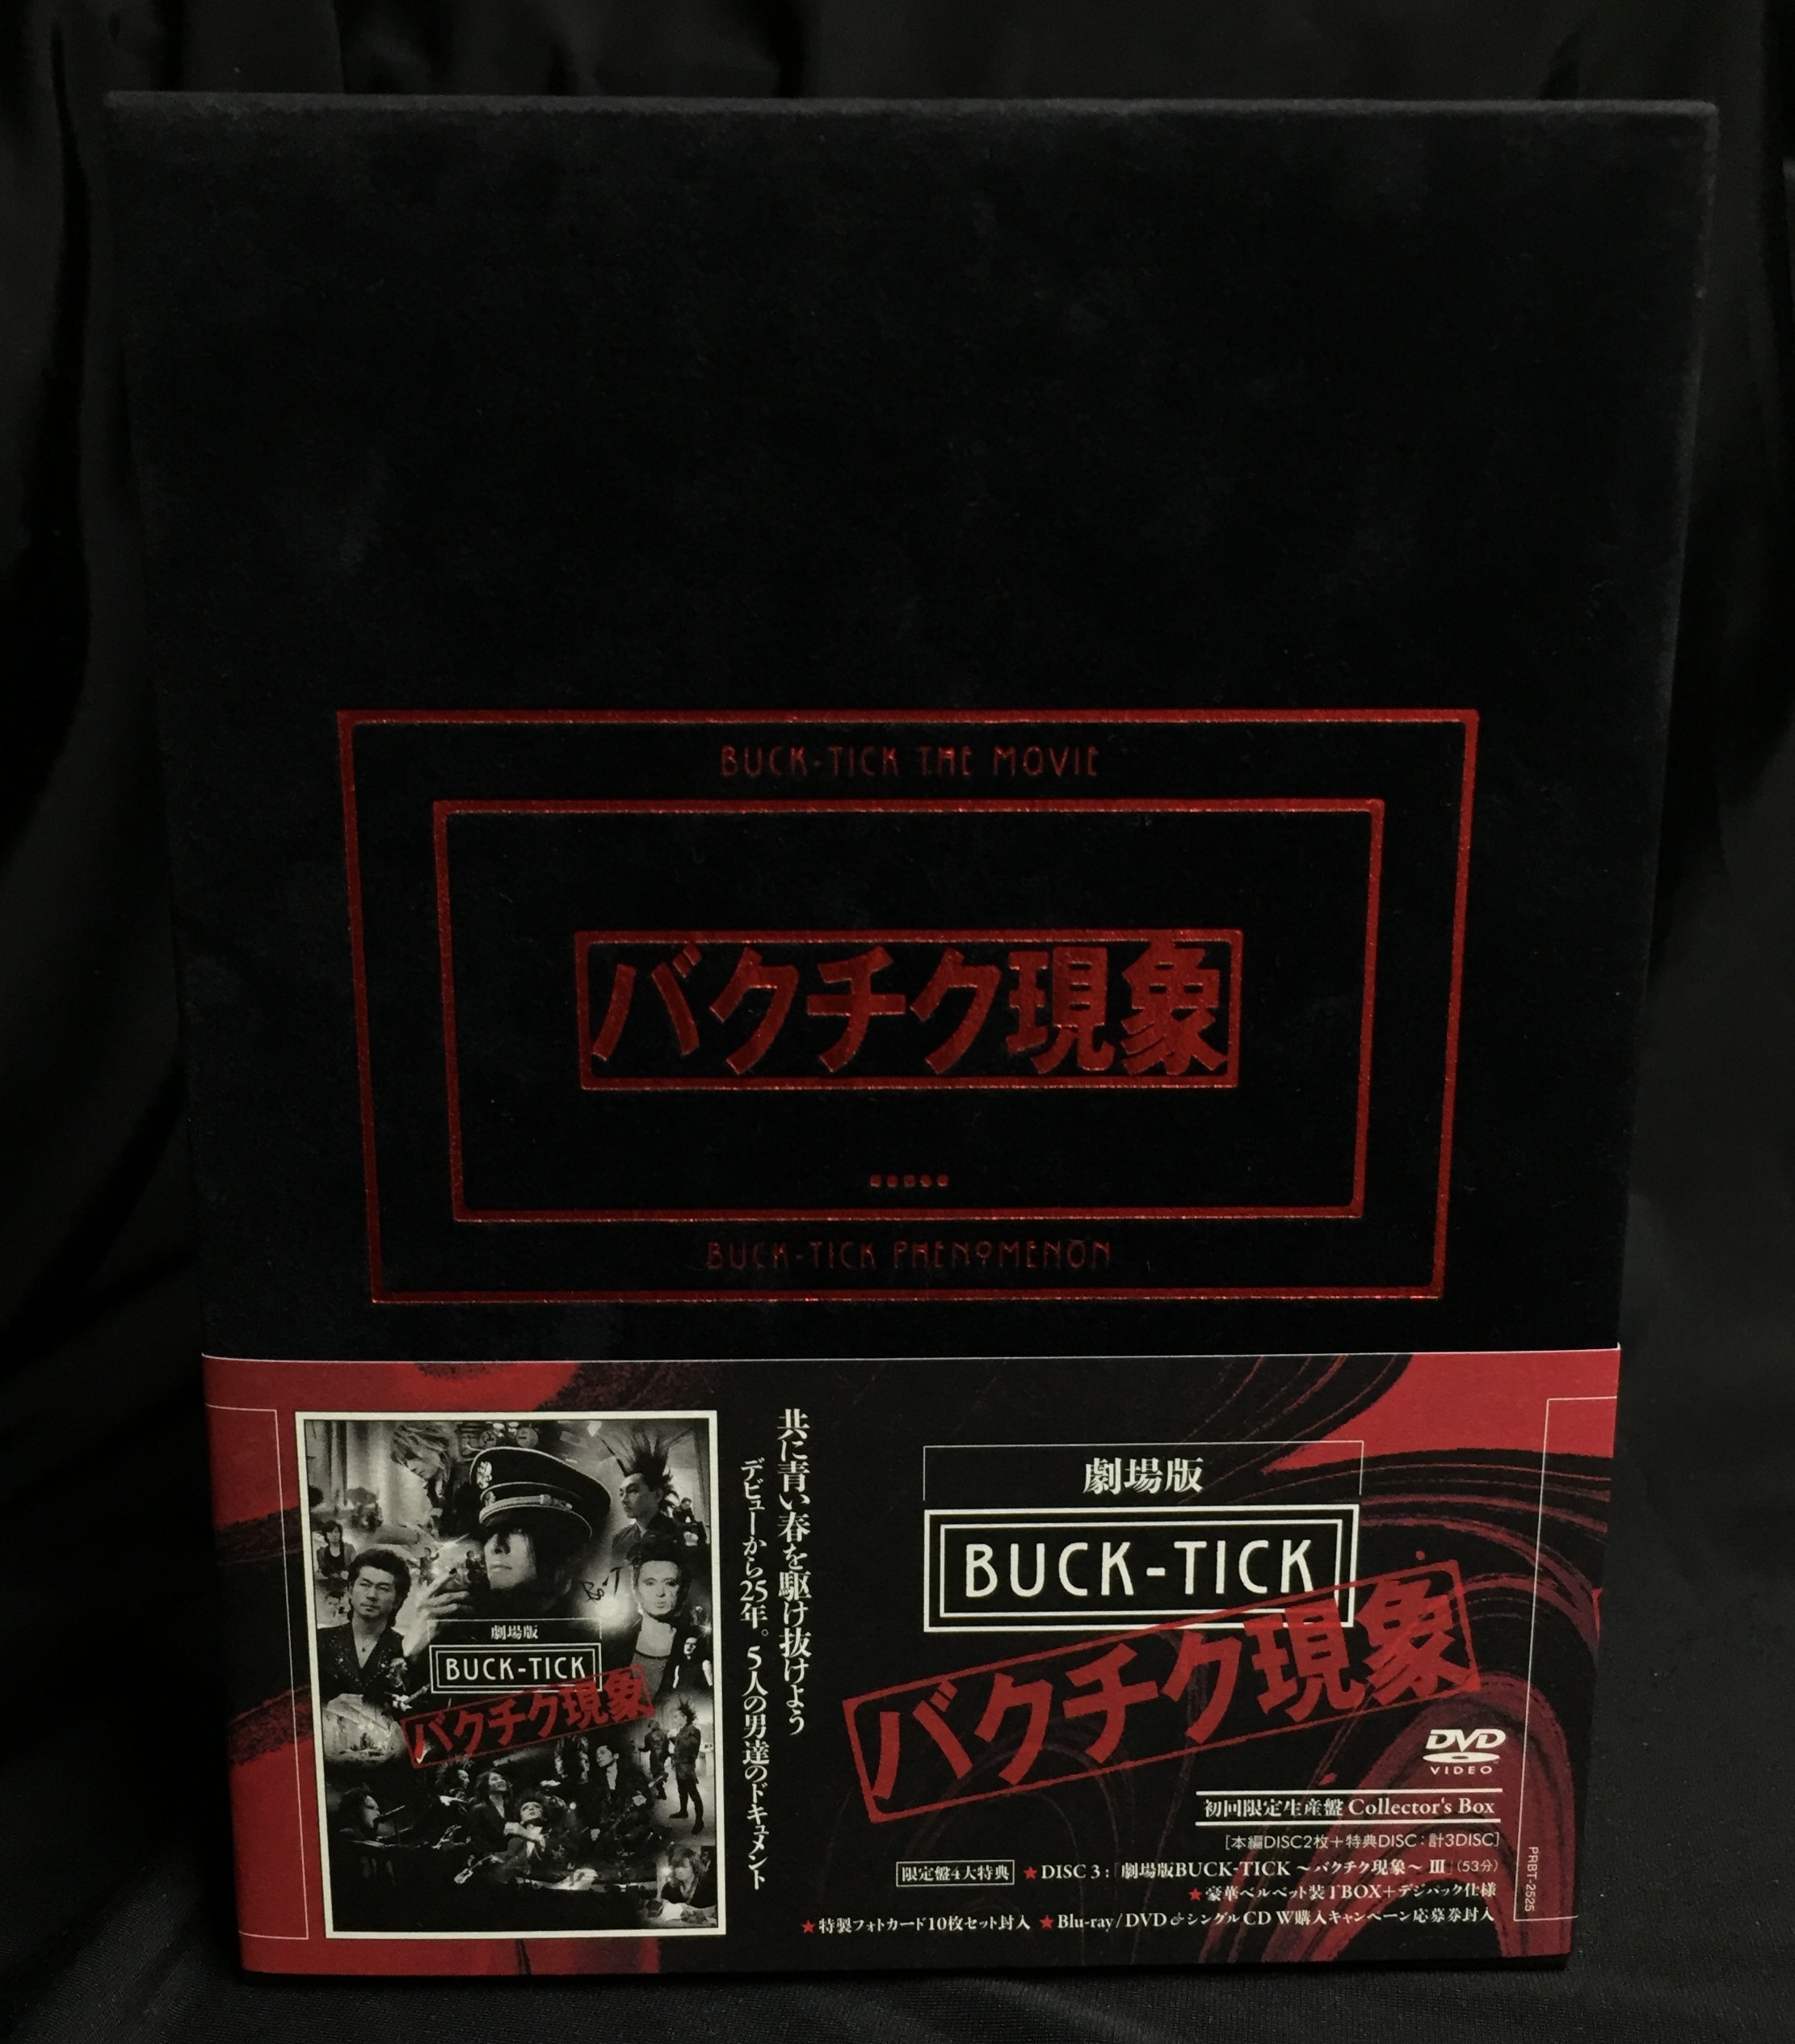 劇場版 BUCK-TICK～バクチク現象～ Collector's Box - DVD/ブルーレイ